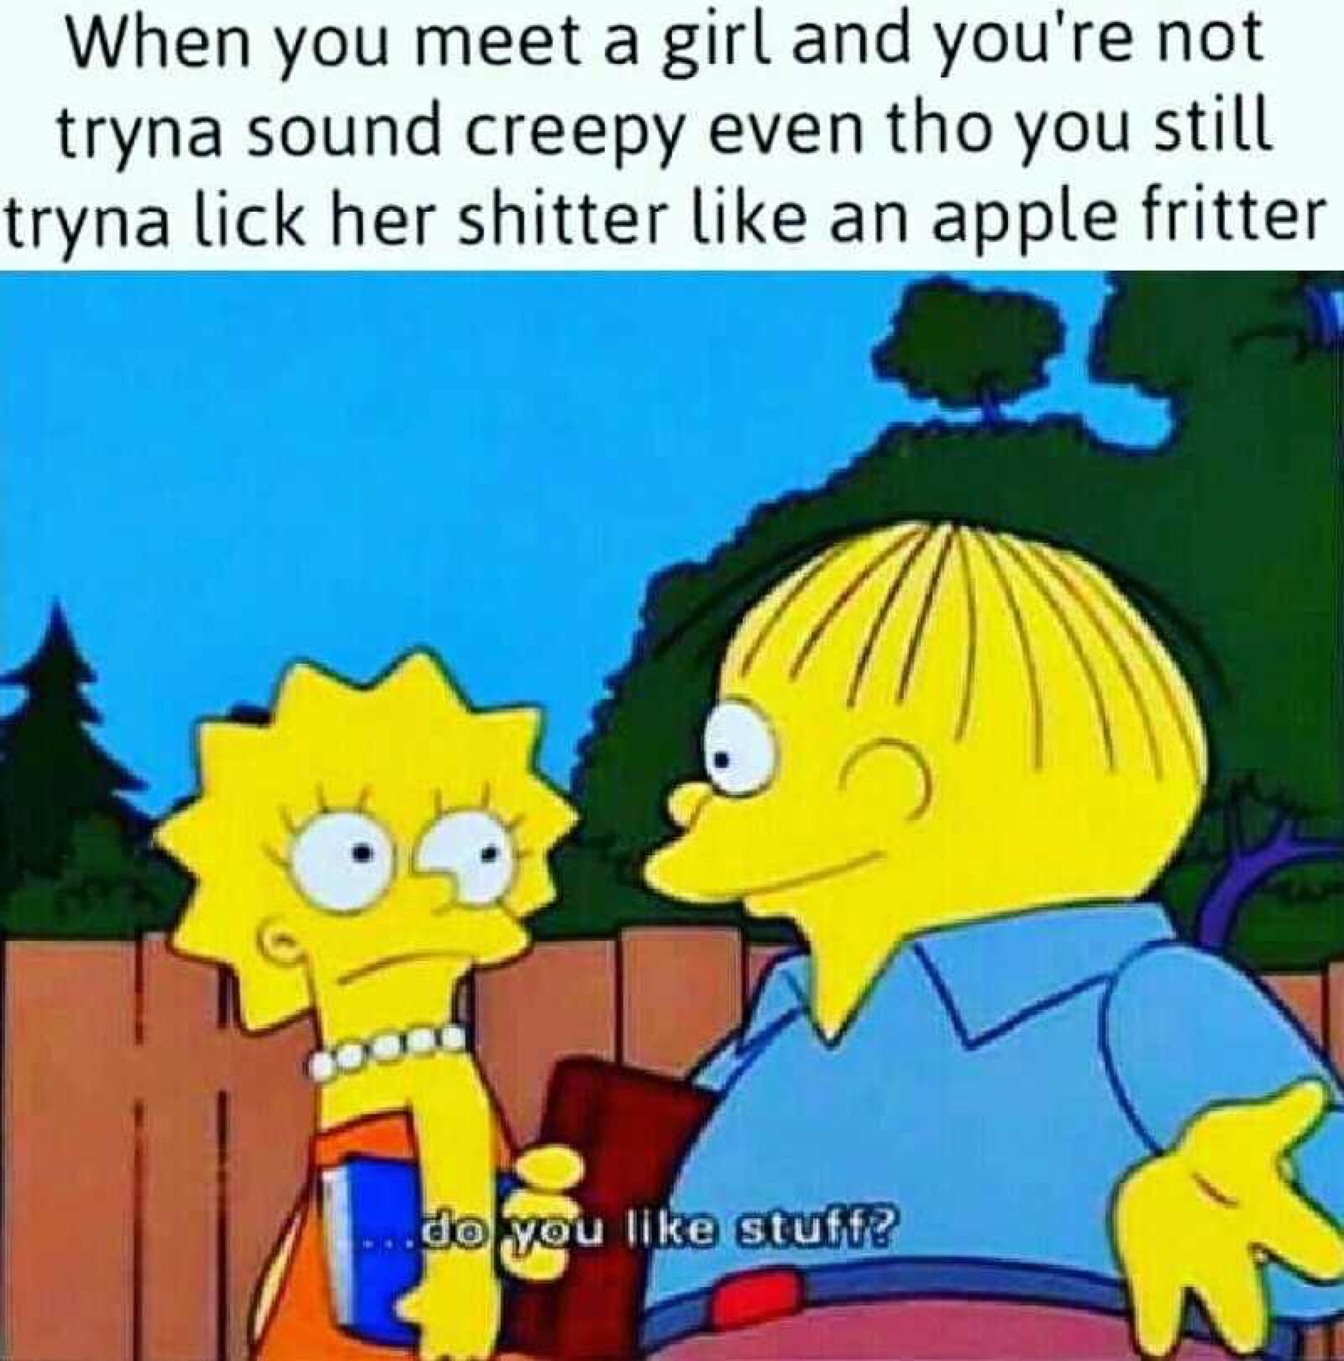 mmm apple fritter - meme